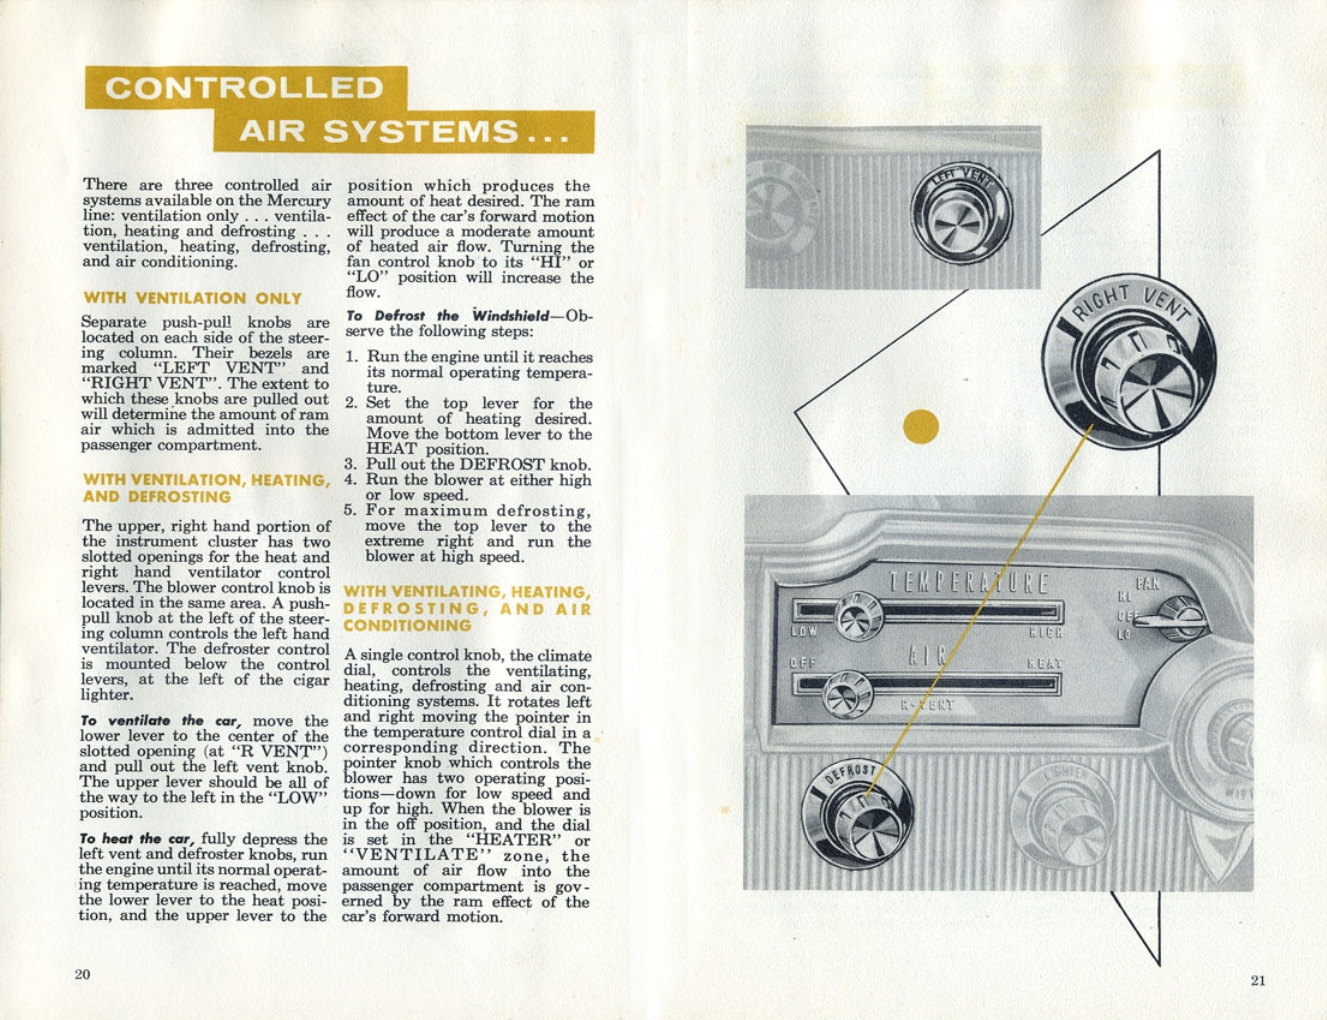 1960_Mercury_Manual-20-21